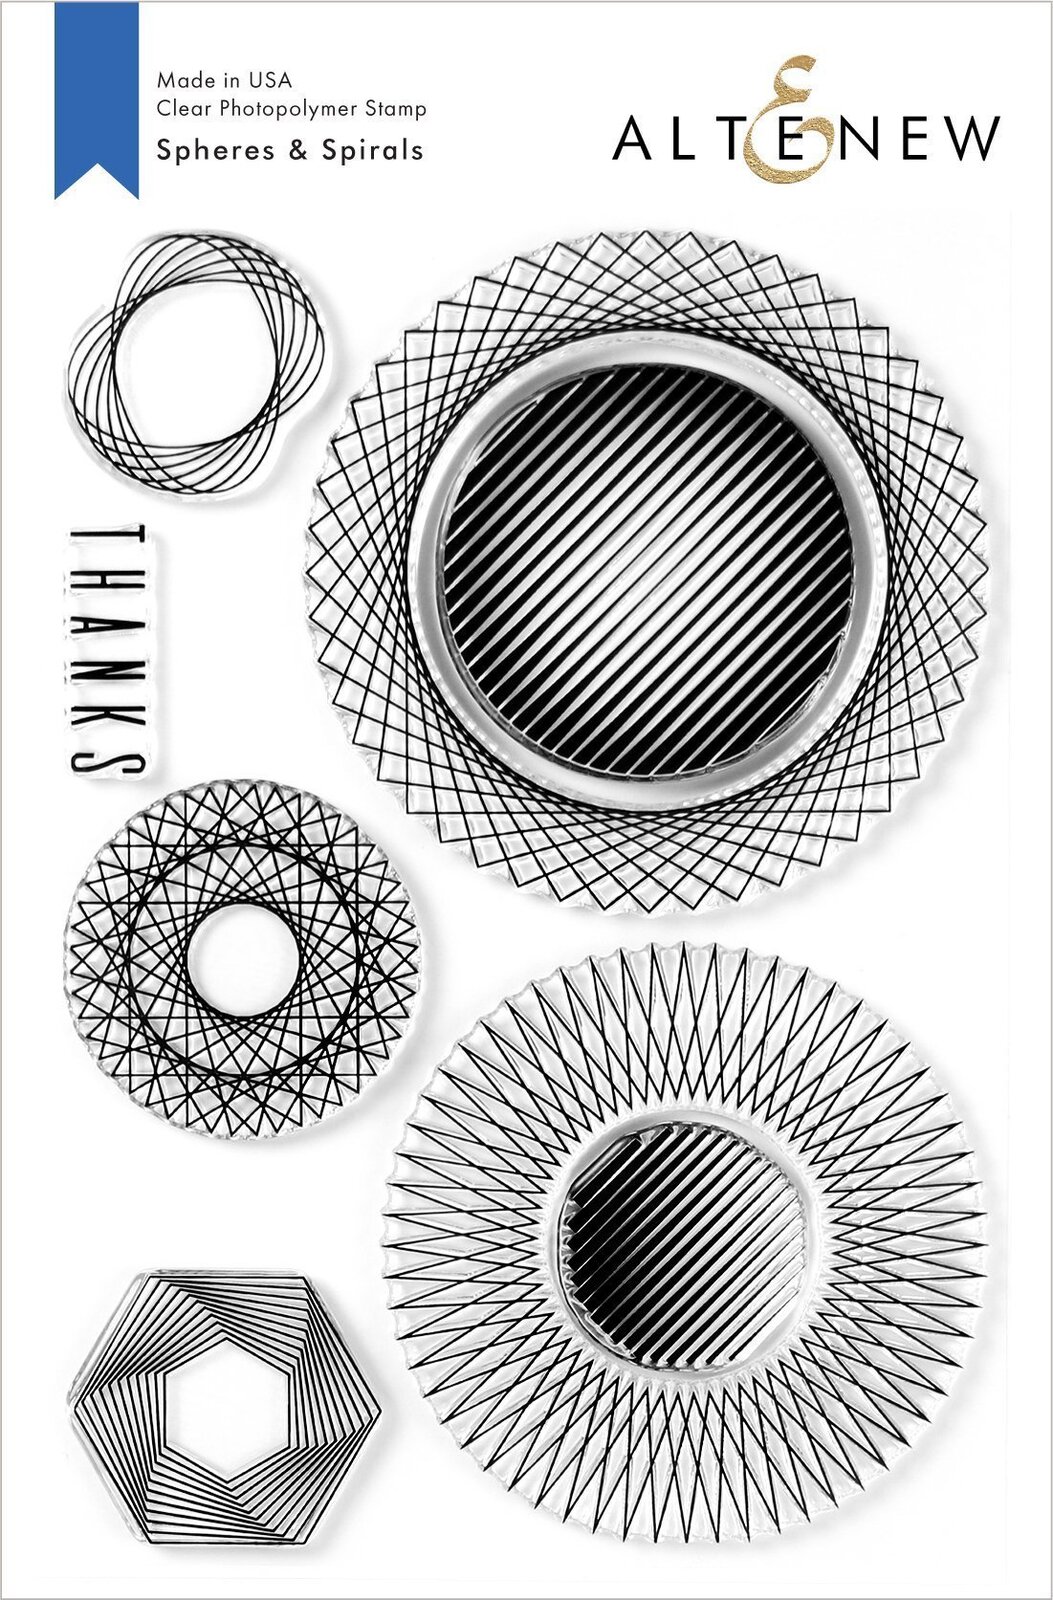 Altenew Spheres and Spirals Stamp Set ALT3940